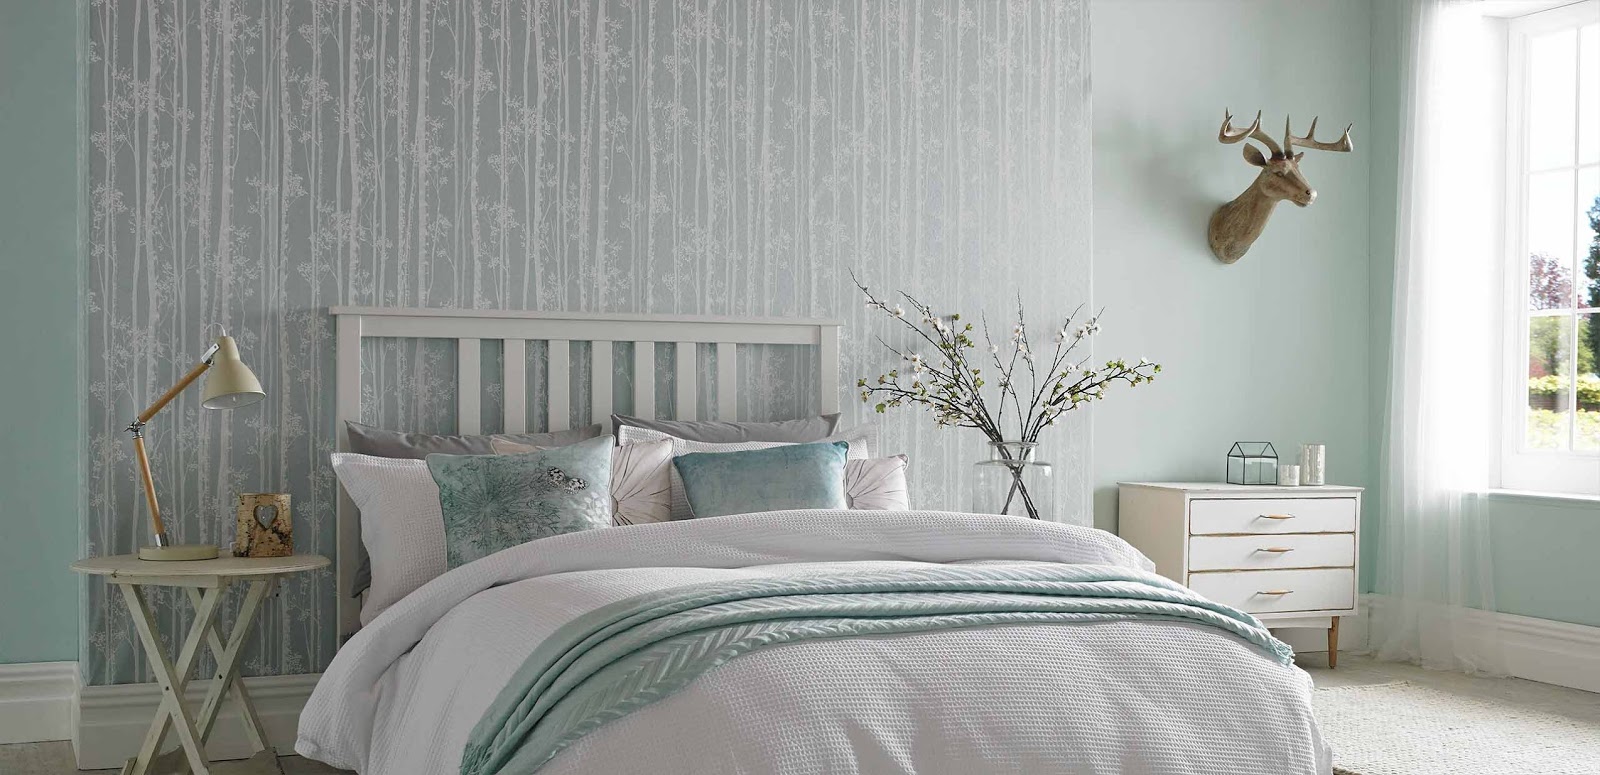 Mách bạn cách làm mới phòng ngủ với giấy dán tường đẹp và độc đáo